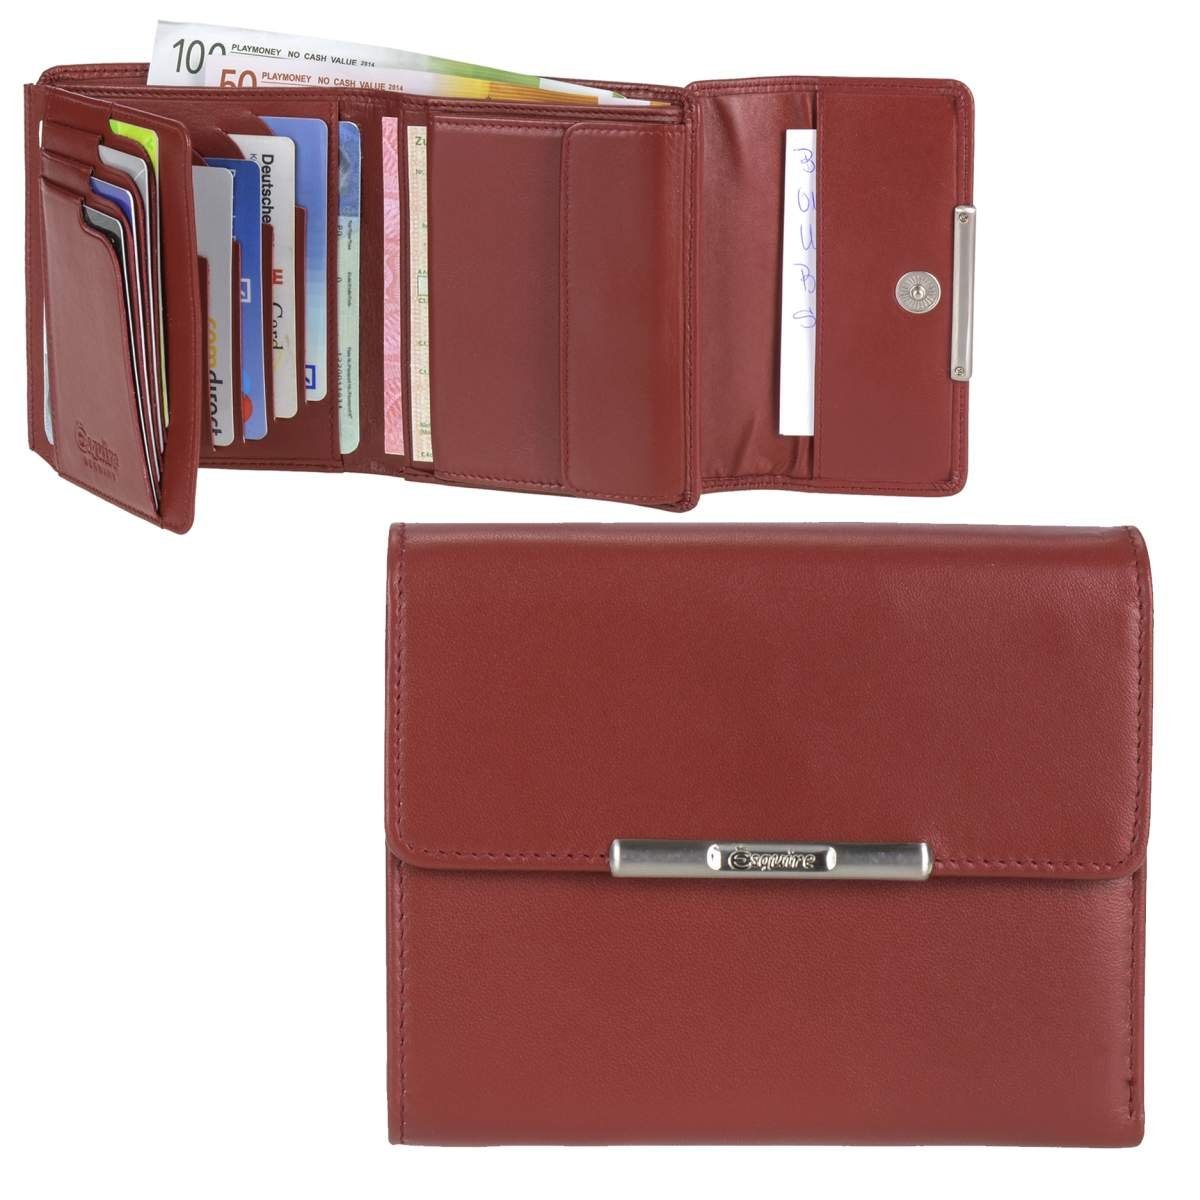 Esquire Geldbörse Helena, Portemonnaie, mit RFID Schutz gegen Datendiebstahl, 12 Kartenfächer rot